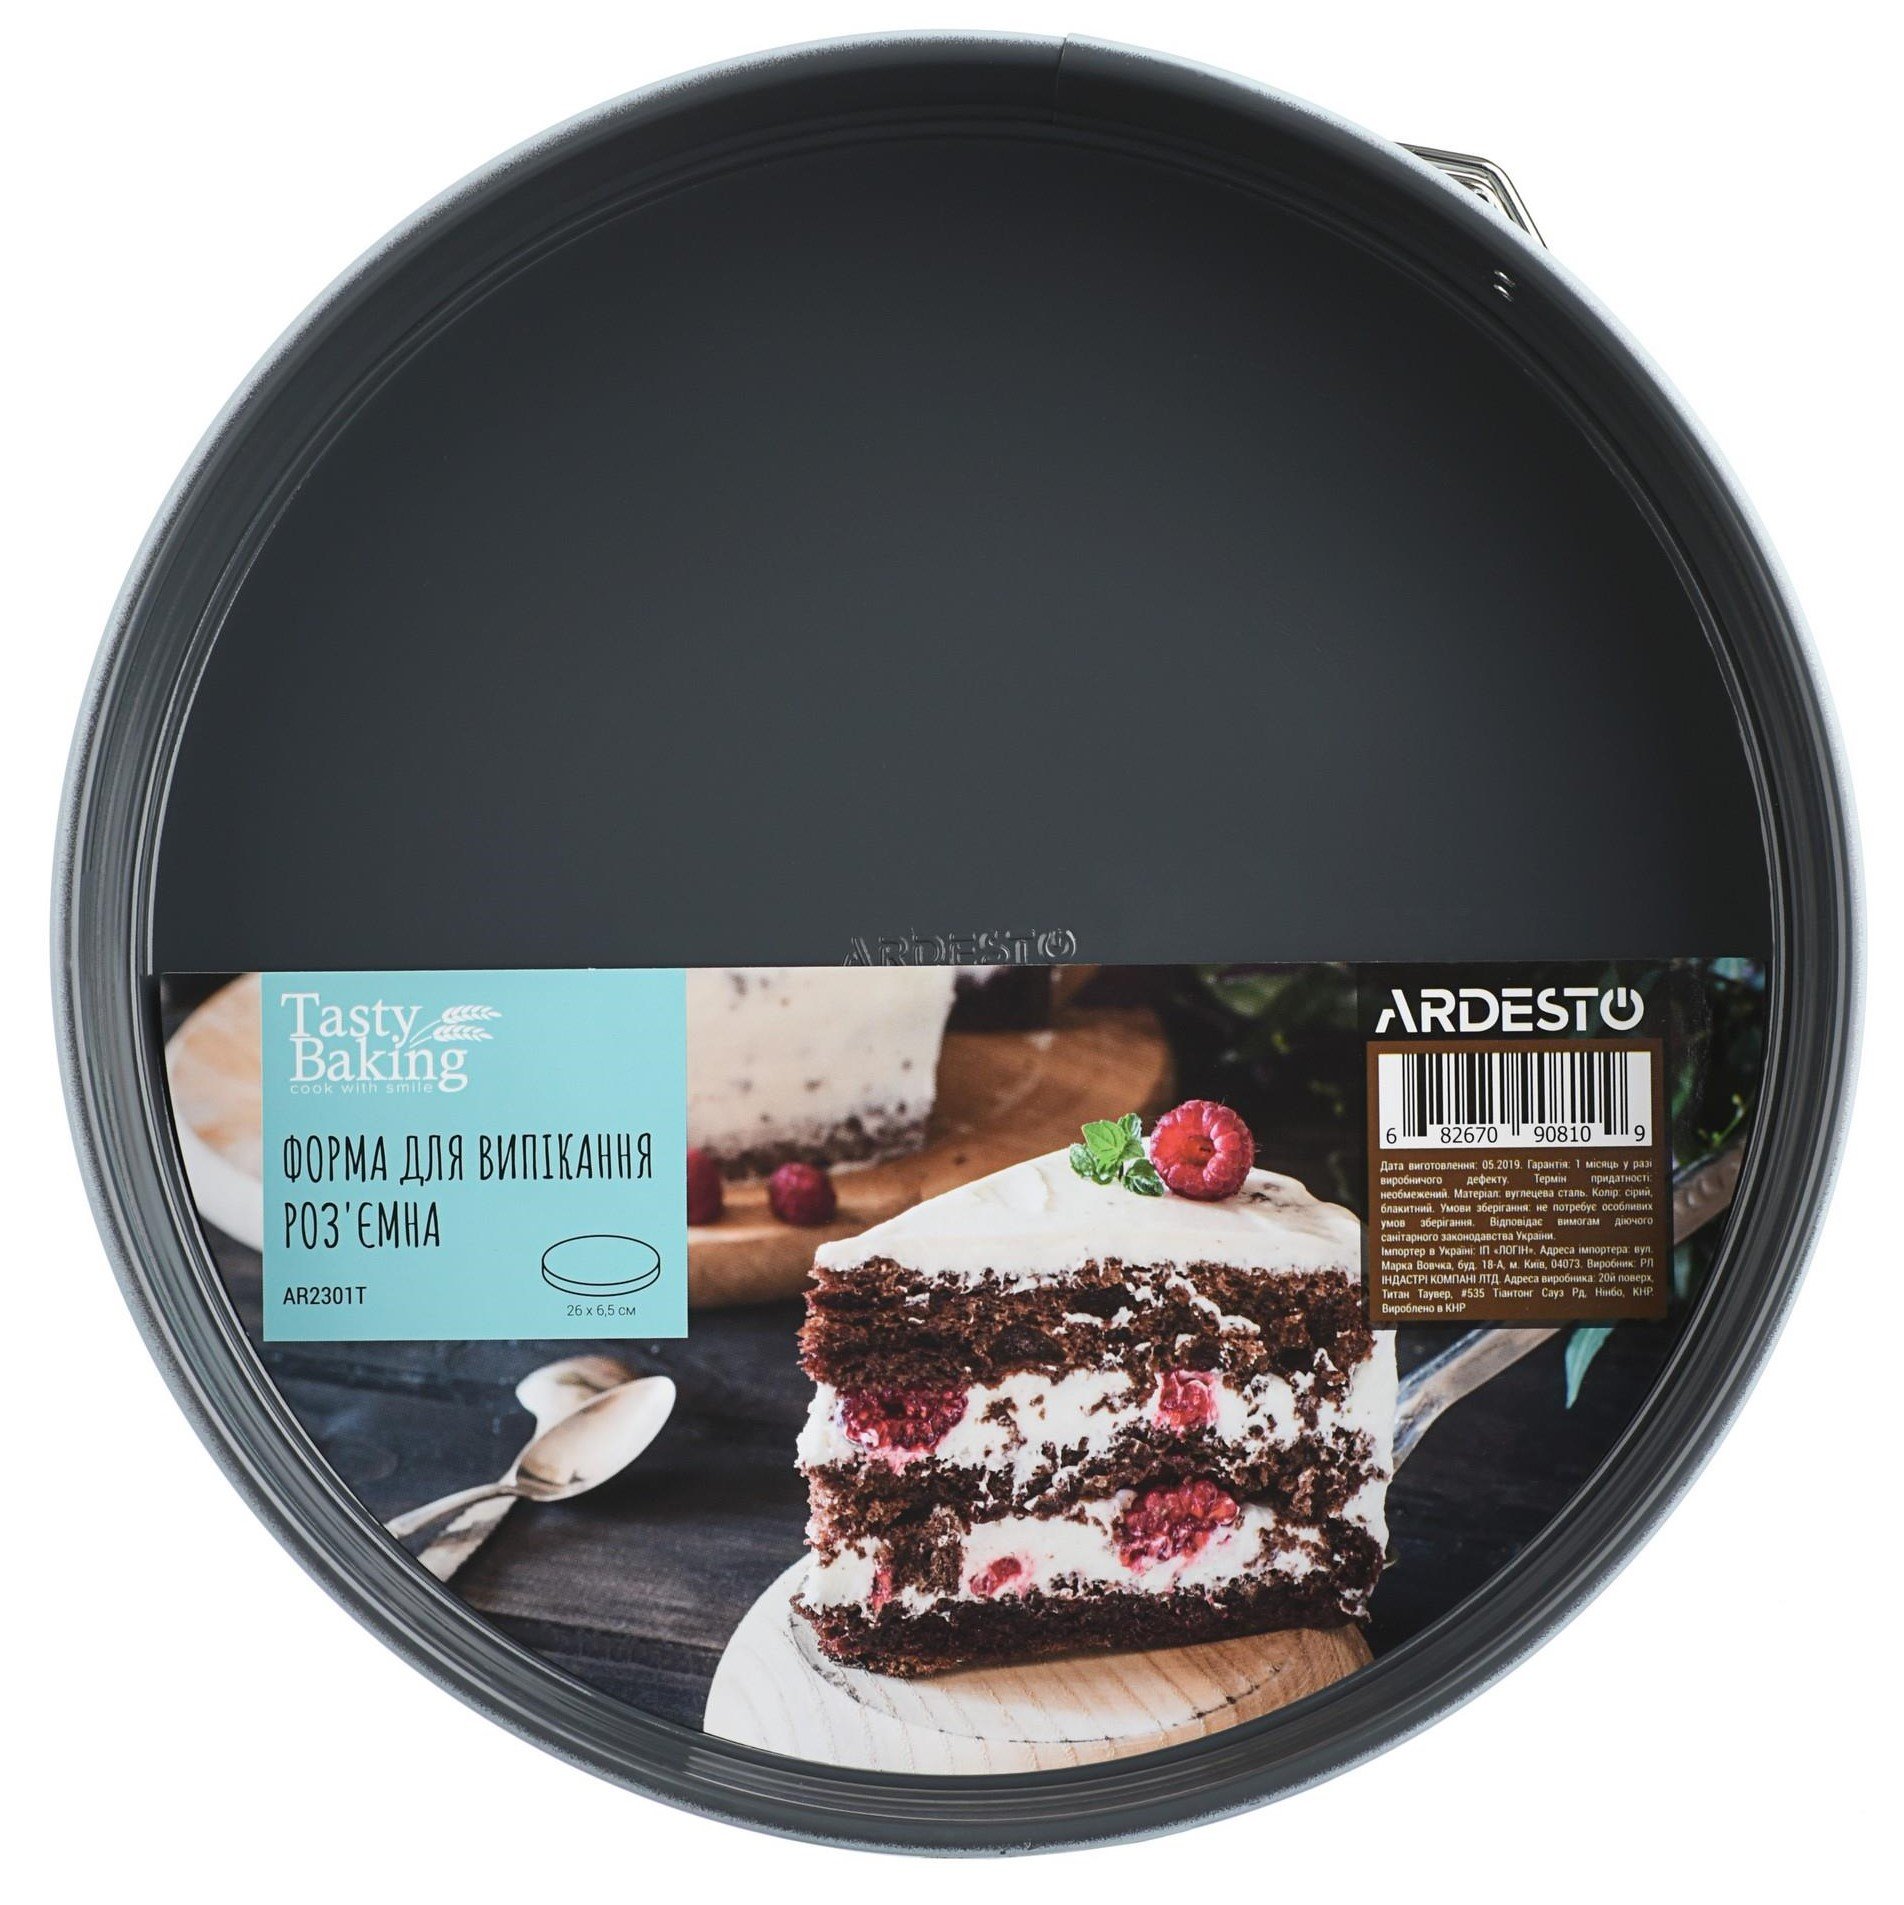 Форма для випікання Ardesto Tasty baking, кругла, 26 см, роз'ємна, темно-сірий (AR2301T) - фото 1